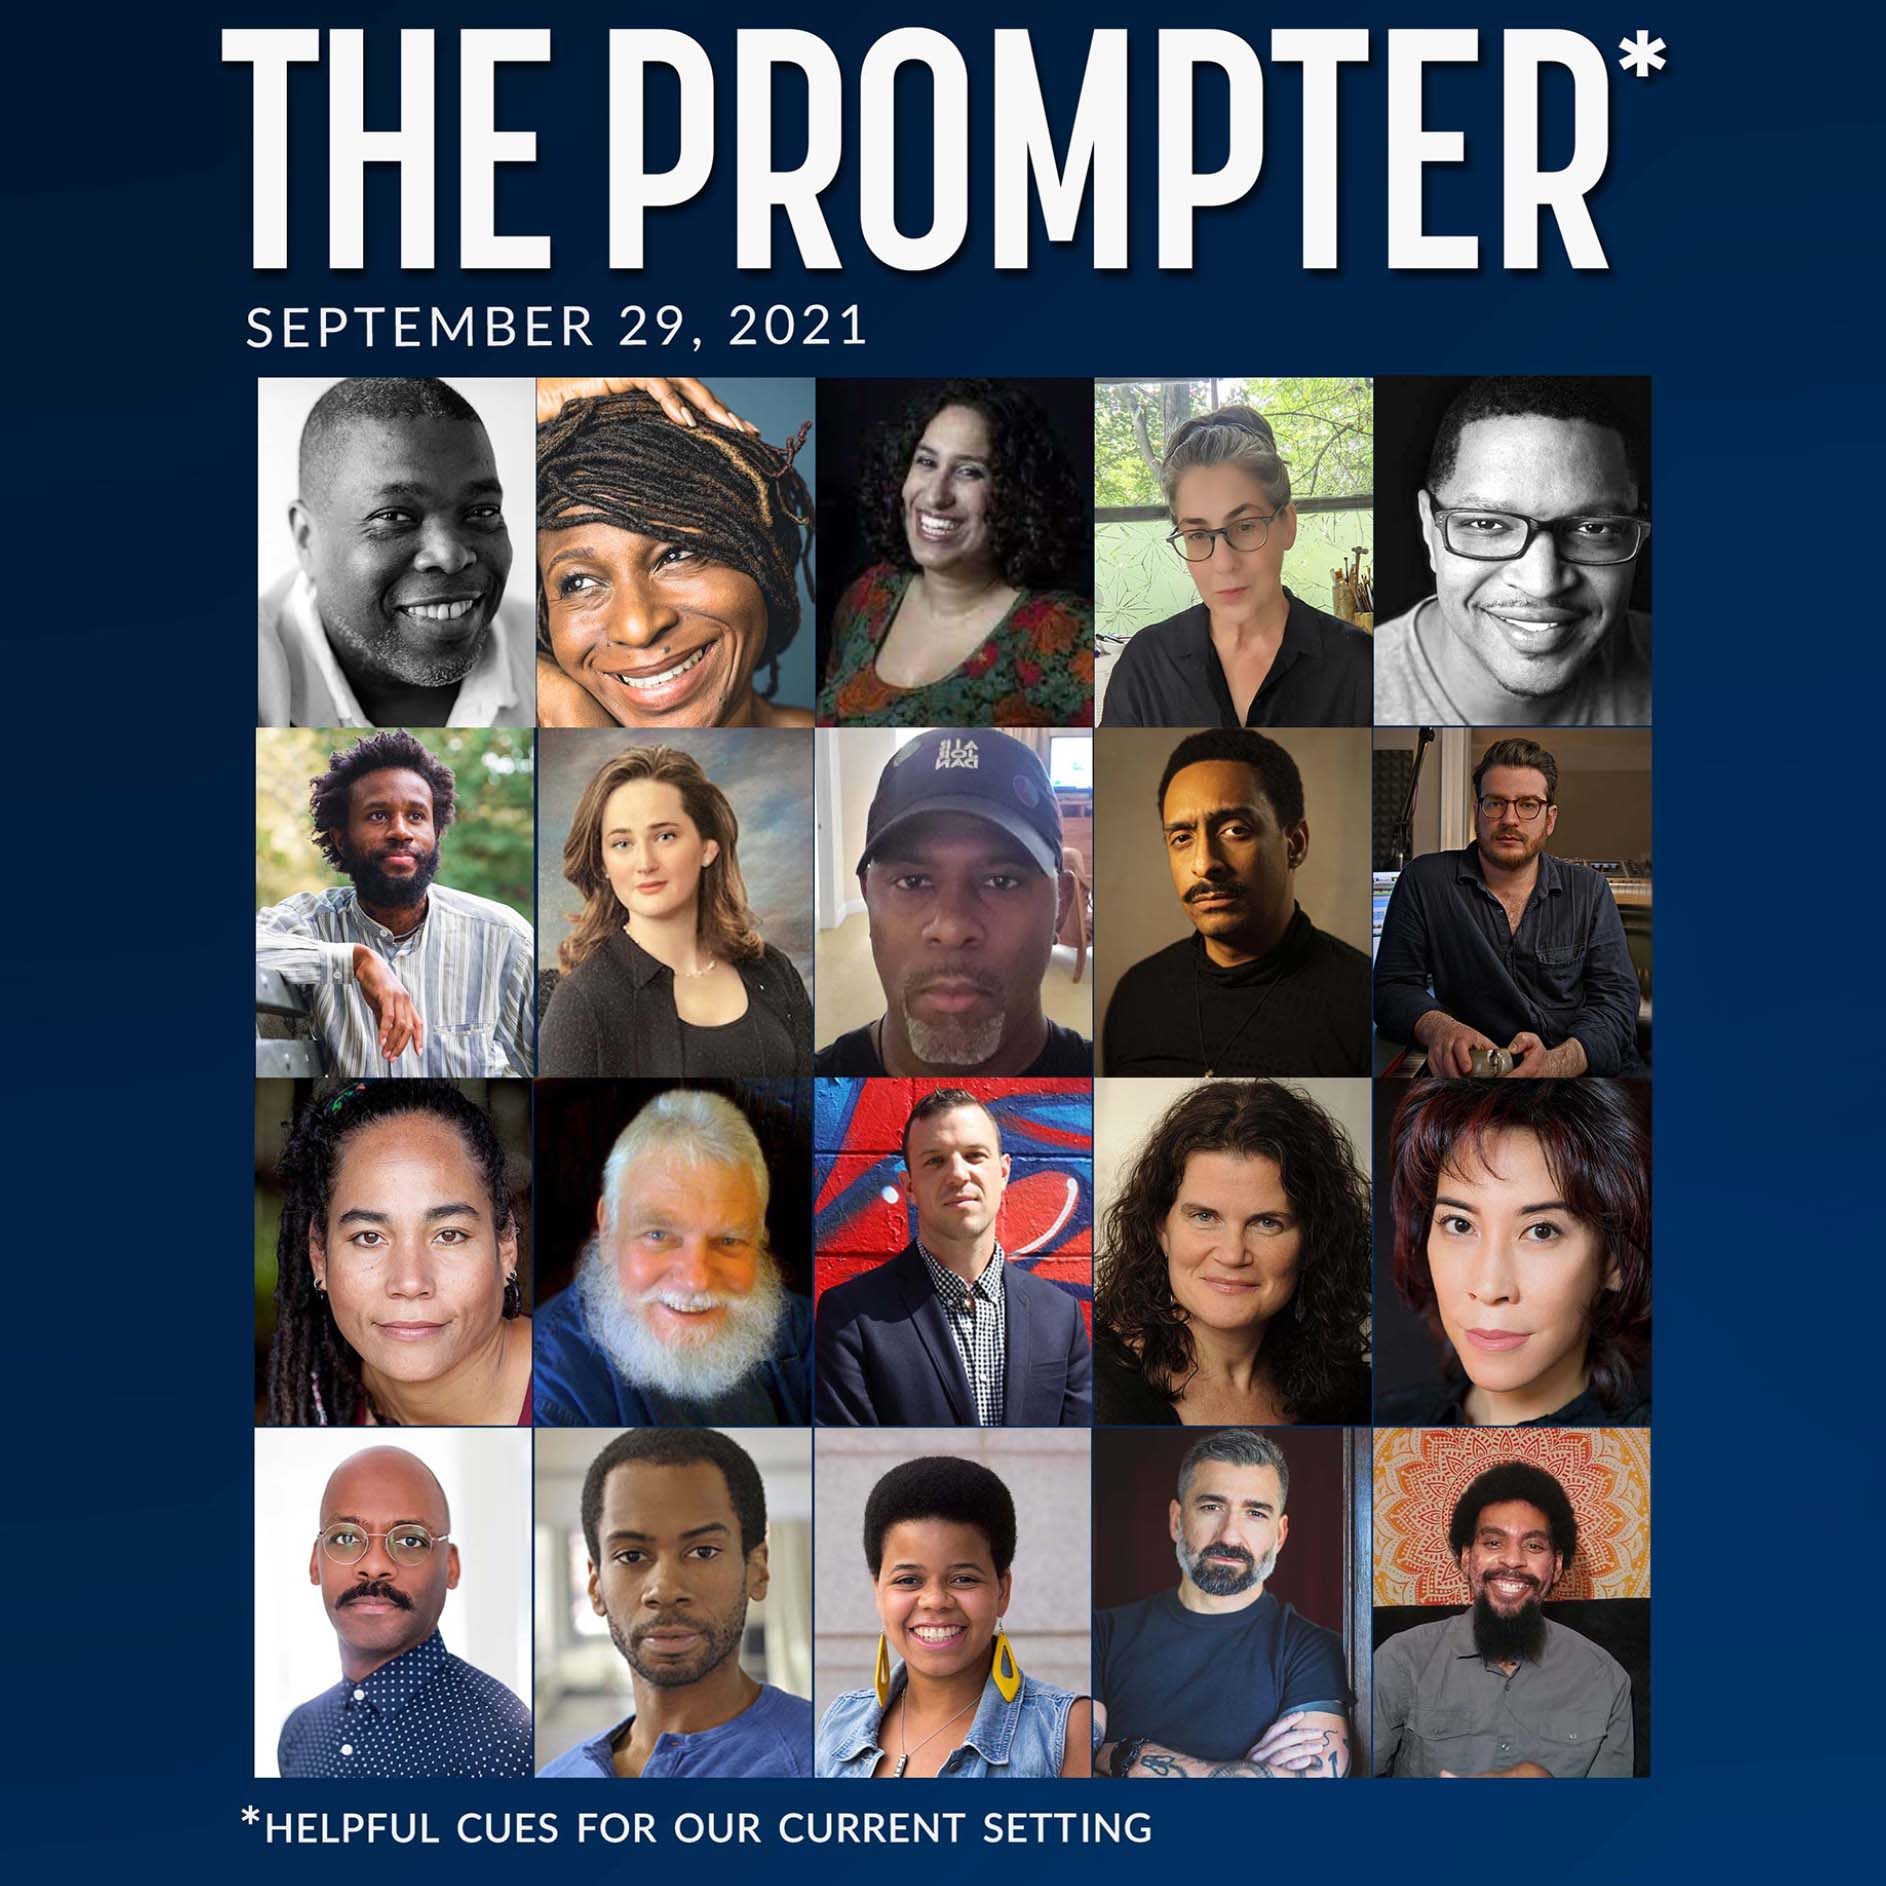 The Prompter - September 29, 2021 thumbnail